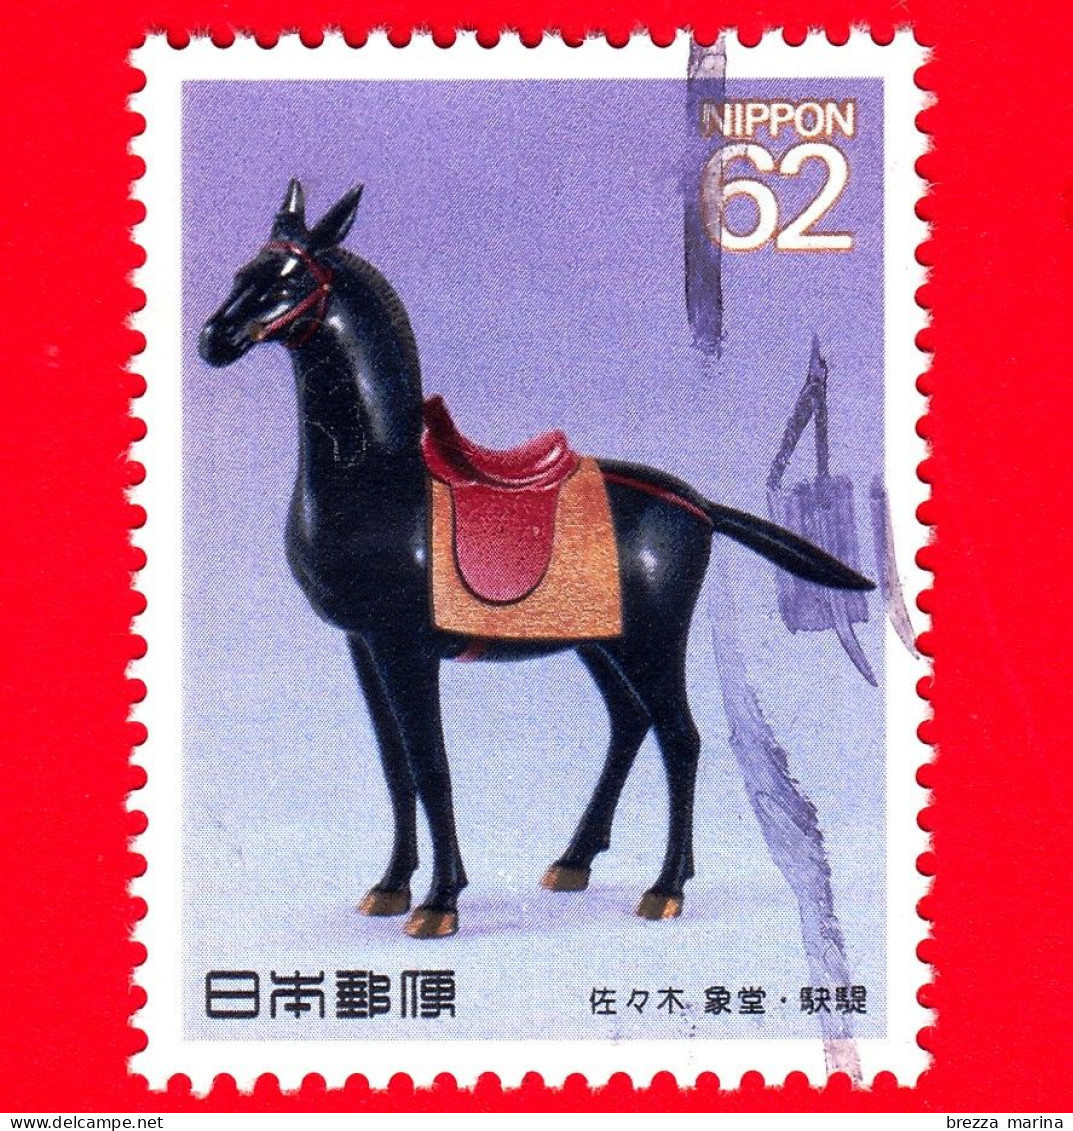 GIAPPONE - NIPPON - Usato - 1990 - Il Cavallo Nella Cultura (3° Serie) - Kettei Di Shodo Sasaki - 62 - Oblitérés